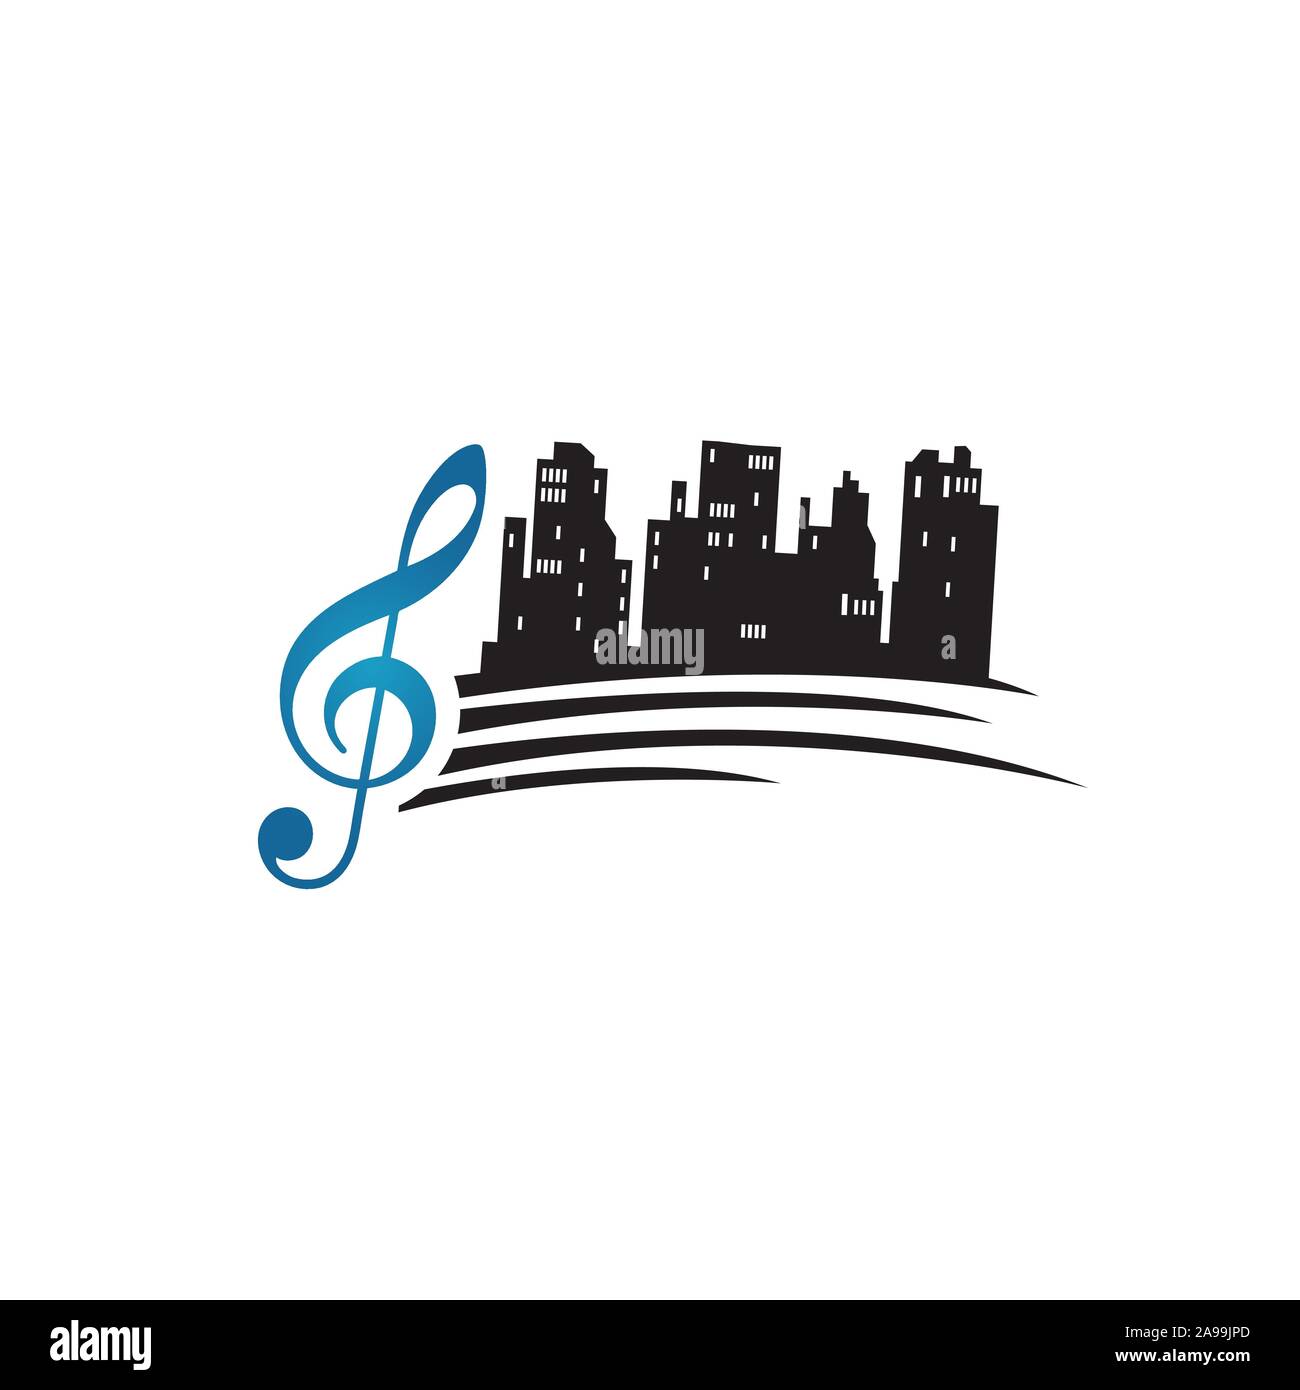 Stadt song Logo Design Vector eine schöne Musik von skyscaper Melodie Abbildung Stock Vektor